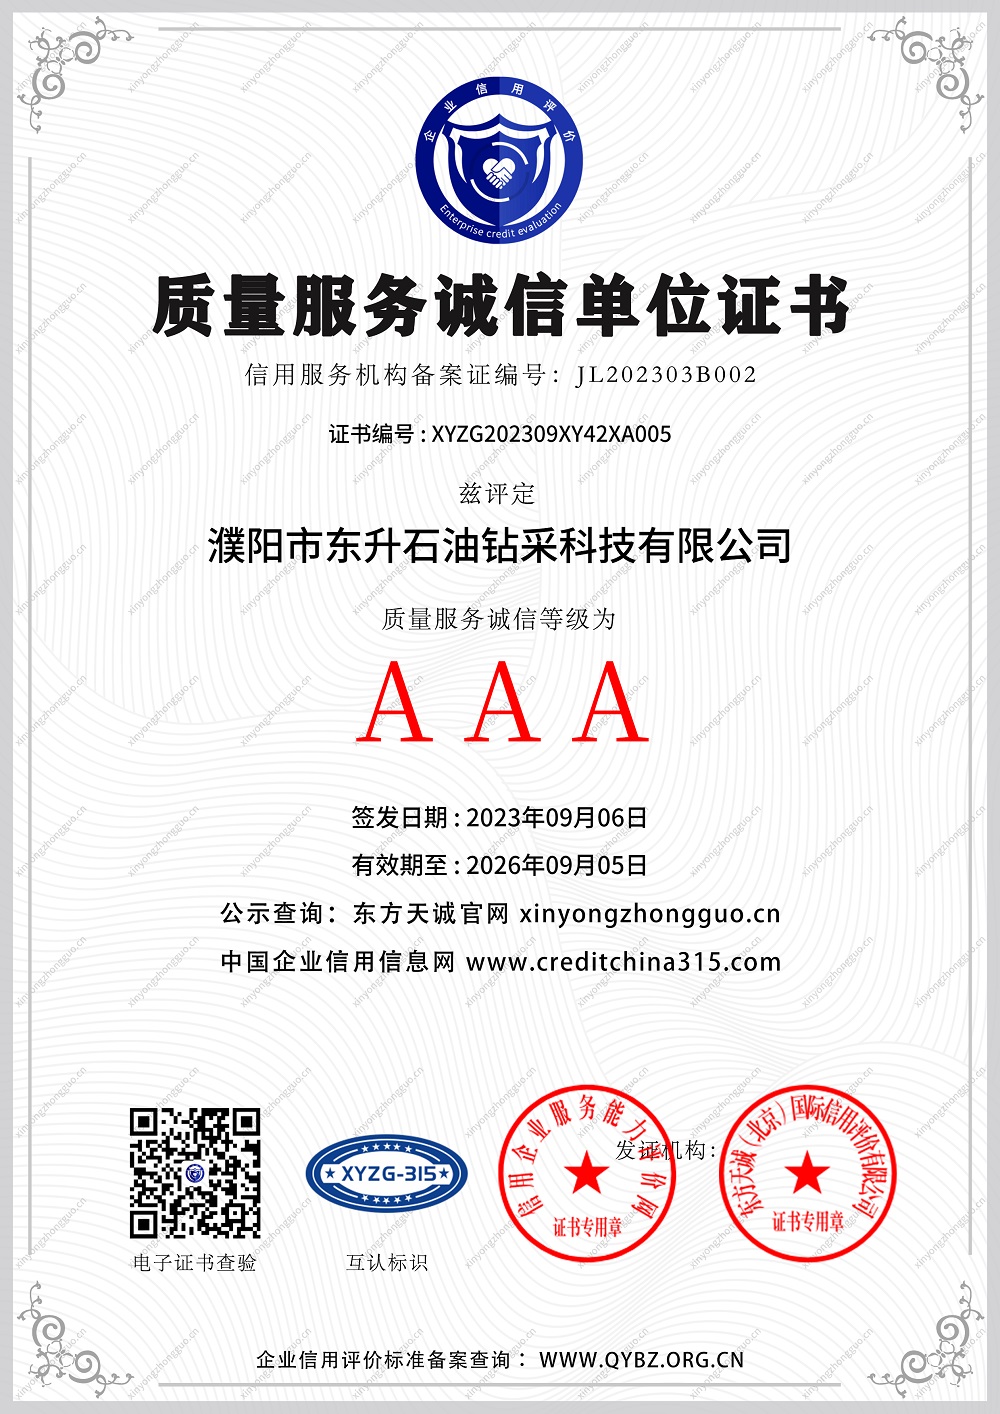 AAA质量服务诚信单位证书